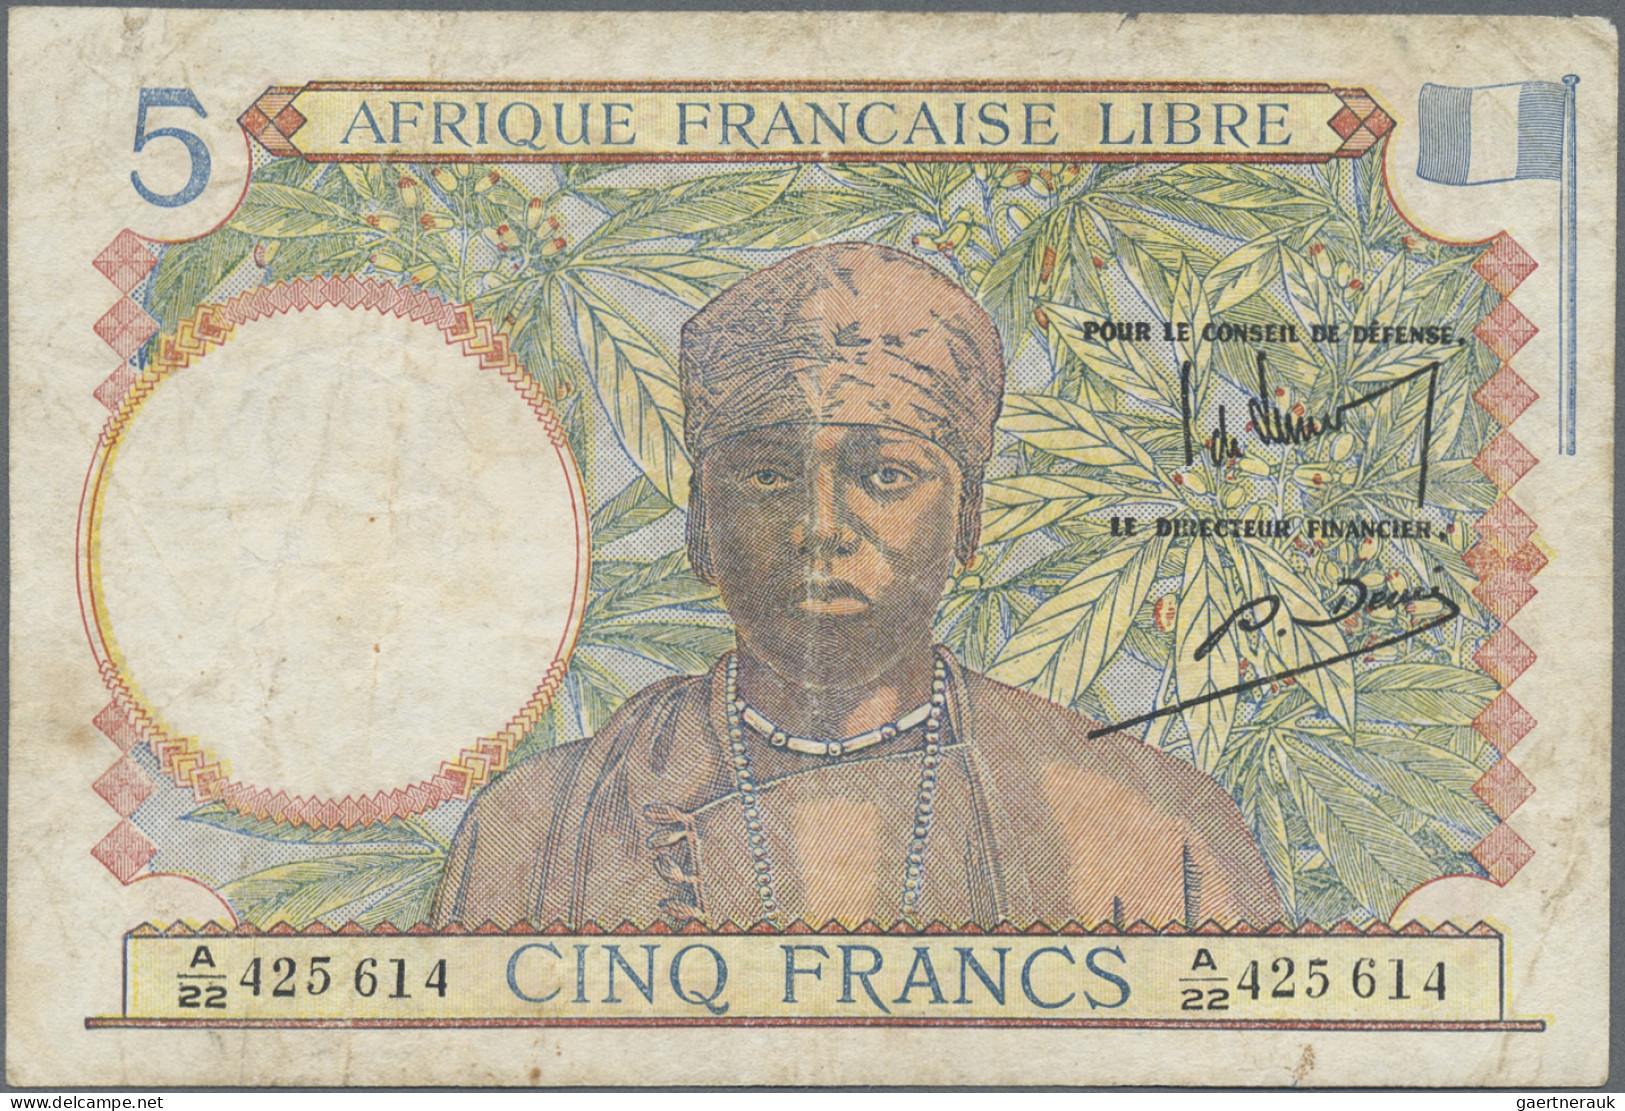 French Equatorial Africa: Afrique Française Libre, Caisse Centrale De La France - Guinée Equatoriale